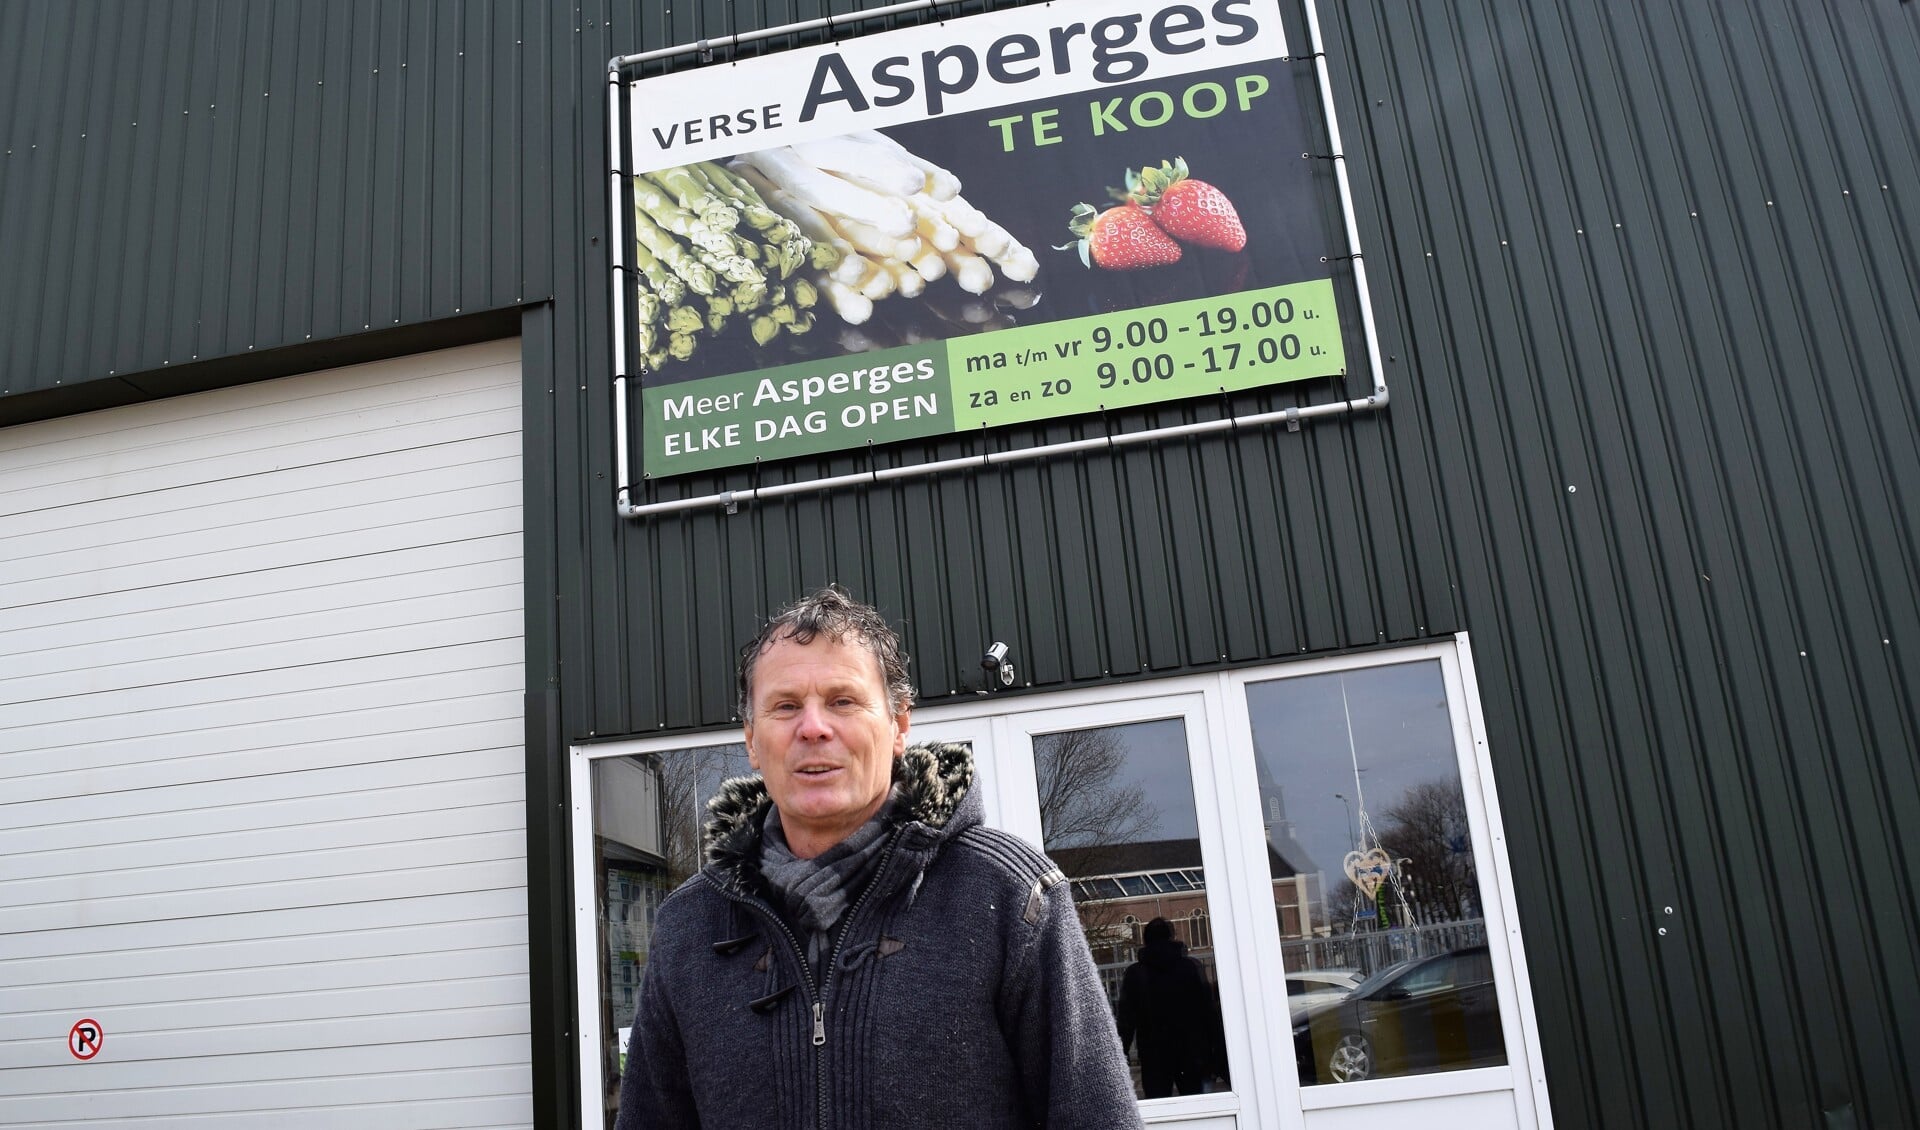 Dagelijks rijdt Paul Heger heen en weer richting Velden voor verse asperges.